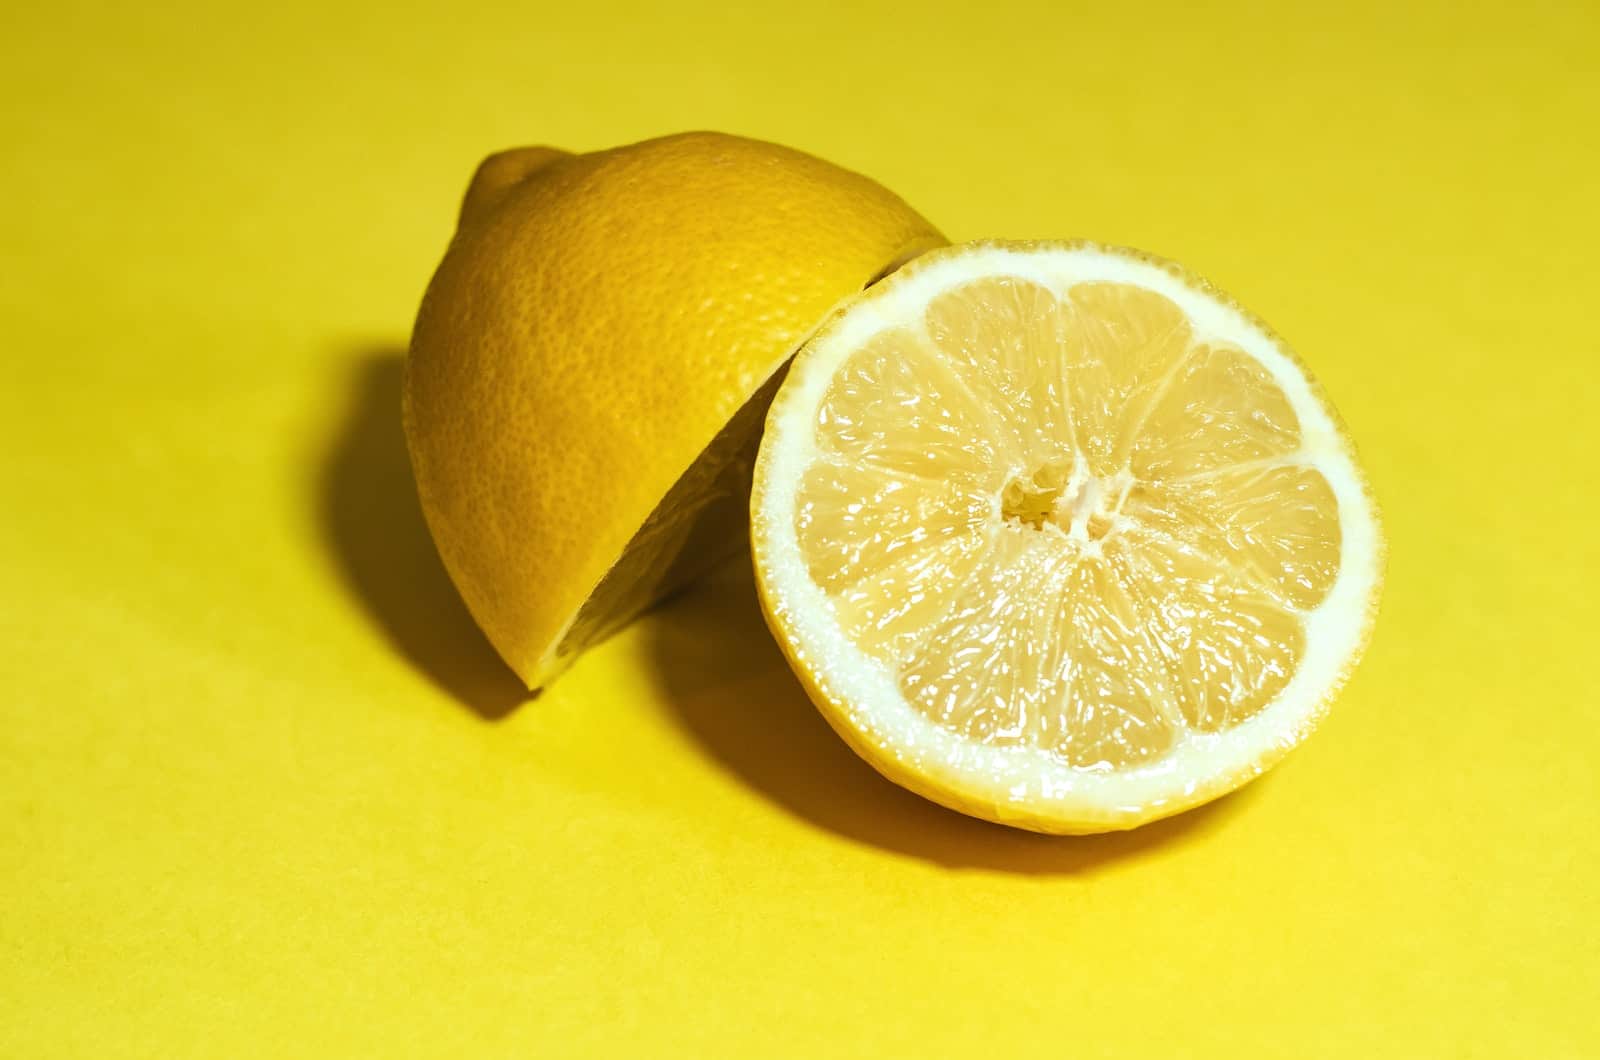 lemon sliced in half